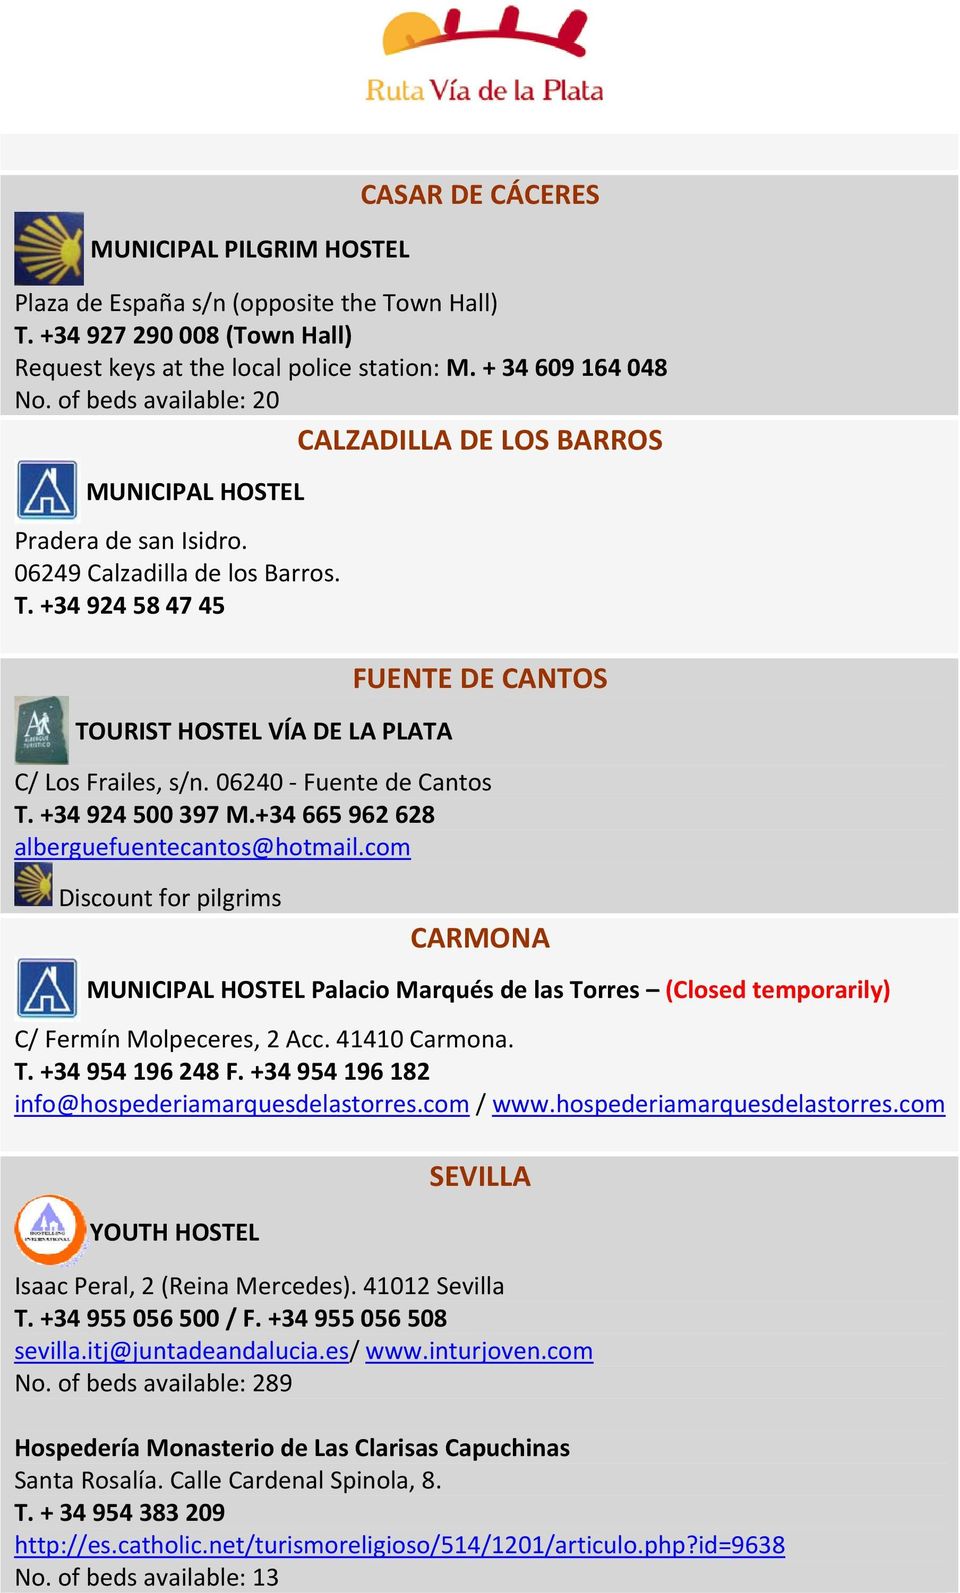 +34 924 58 47 45 TOURIST HOSTEL VÍA DE LA PLATA FUENTE DE CANTOS C/ Los Frailes, s/n. 06240 Fuente de Cantos T. +34 924 500 397 M.+34 665 962 628 alberguefuentecantos@hotmail.